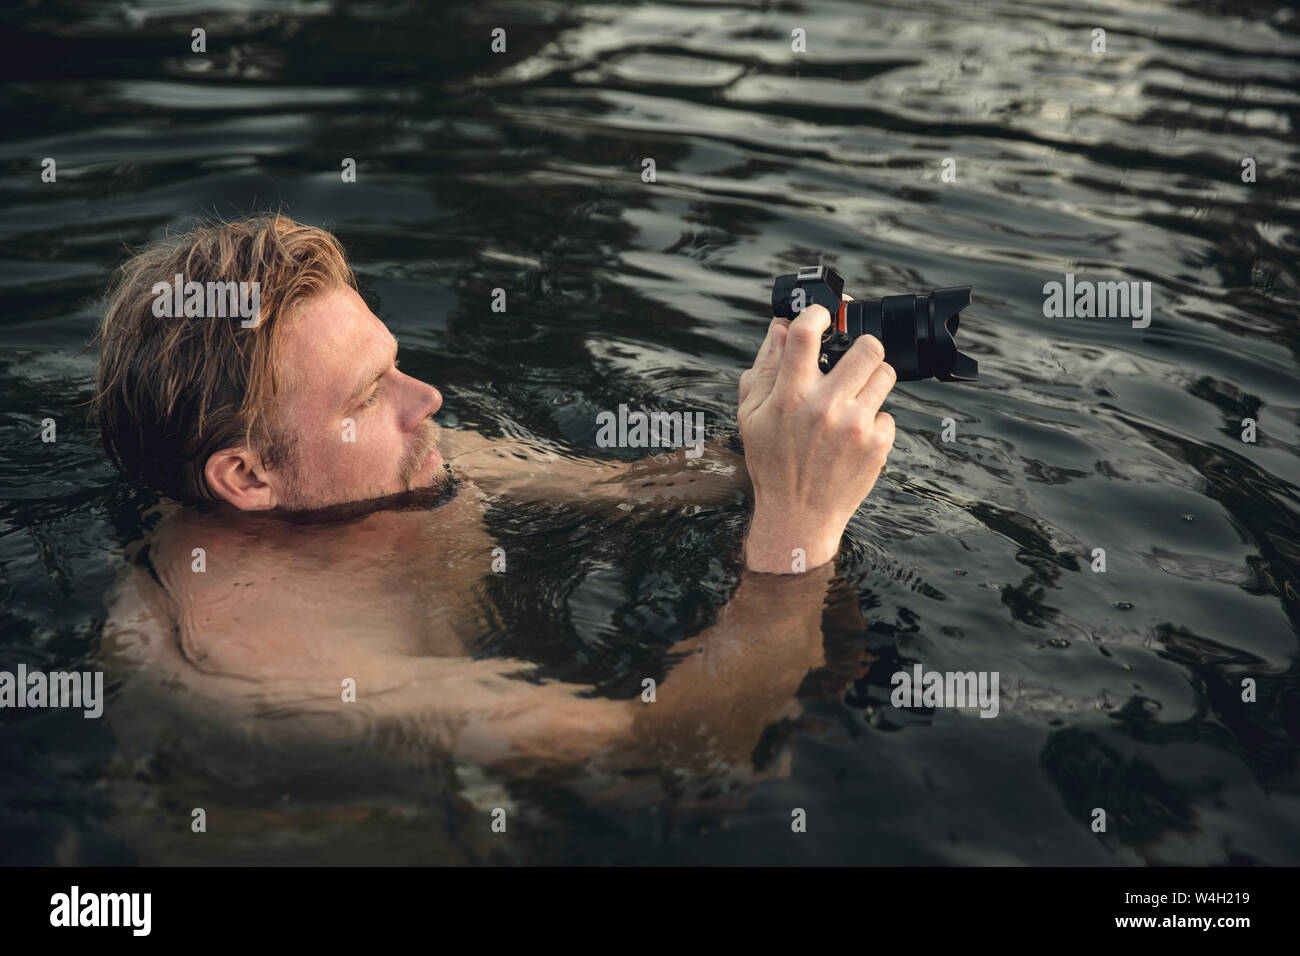 Homme natation dans le lac, prendre des photos avec son appareil photo Banque D'Images